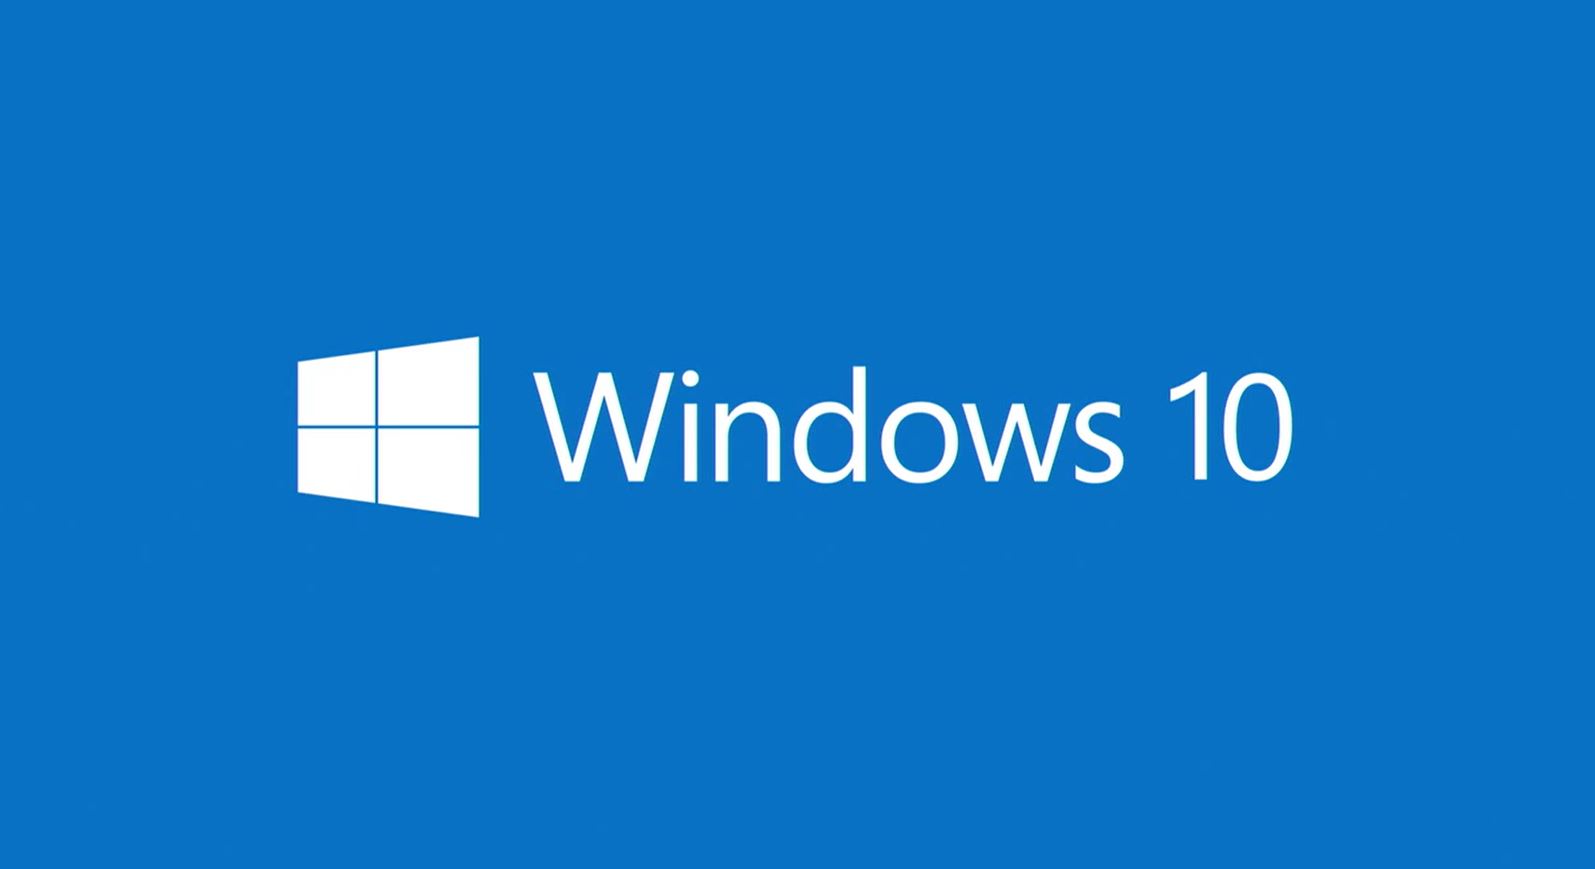 Windows 10 je doporučeným updatem pro Windows 7 a 8.1